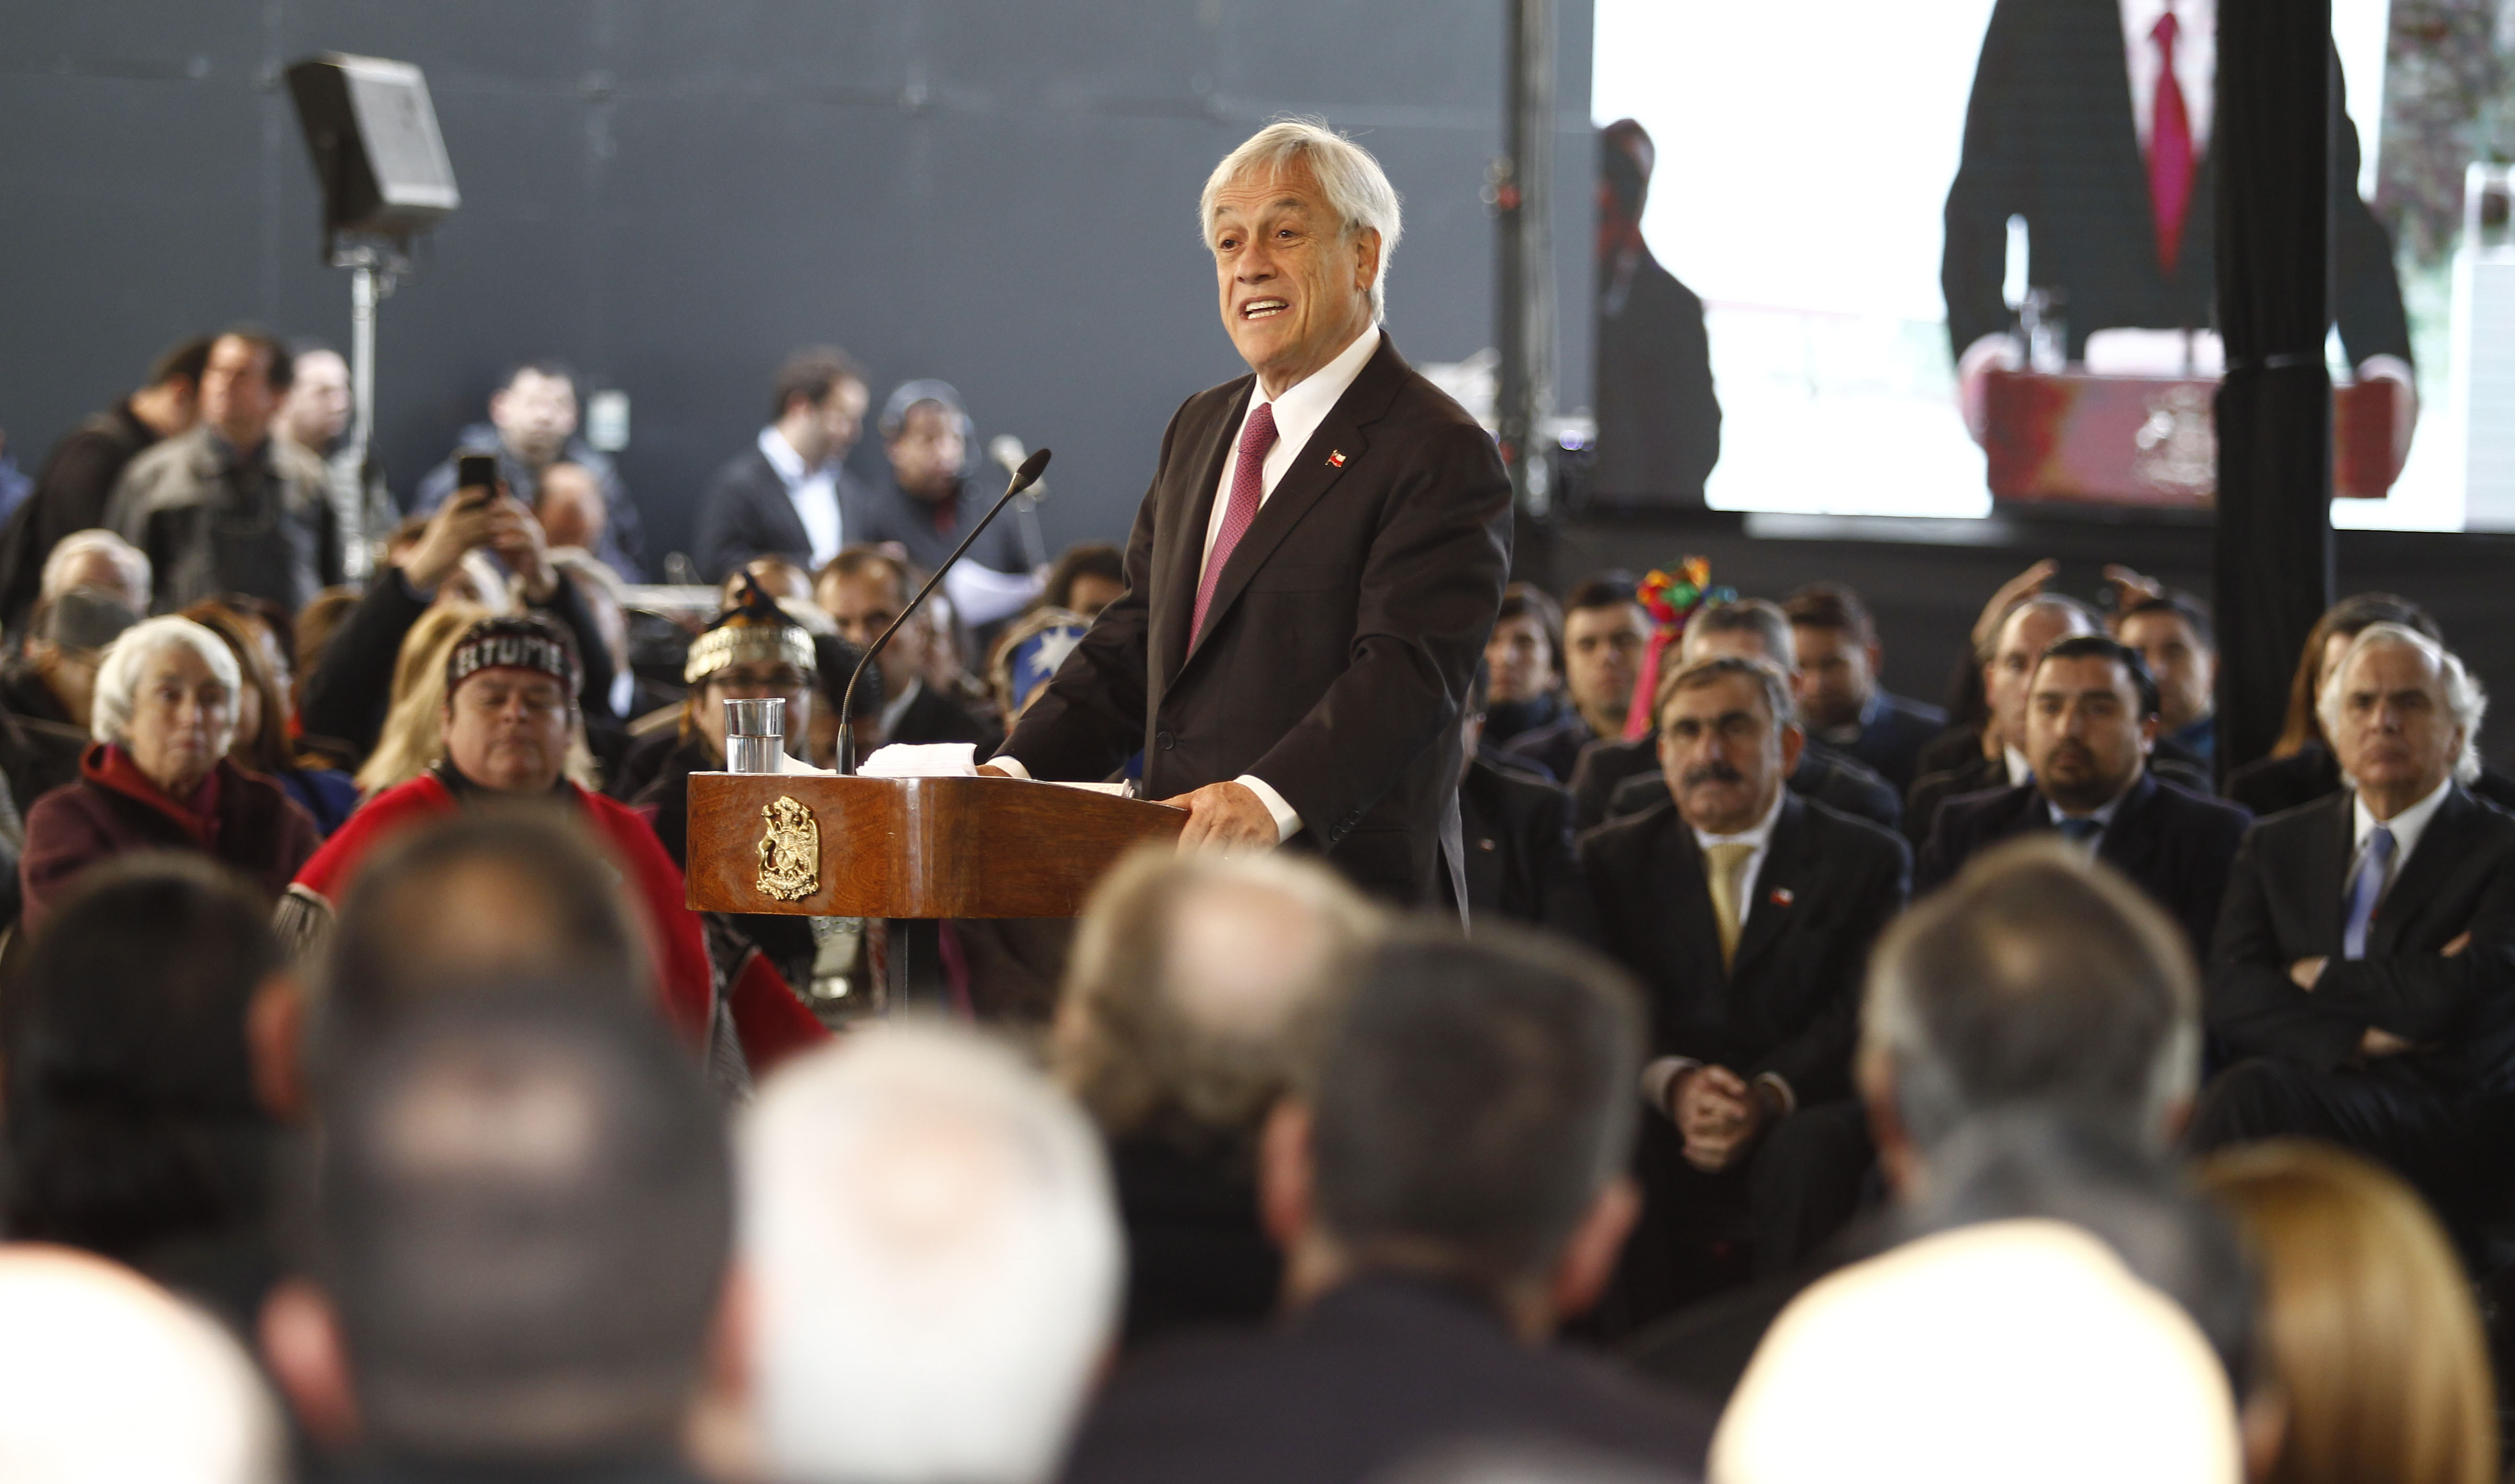 24 de Septiembre del 2018/TEMUCO El Presidente Sebastián Piñera junto al ministro del Interior y Seguridad Pública, , el ministro de Desarrollo Social y el Intendente de la Araucaníal, anuncia el Acuerdo Nacional por el Desarrollo y la Paz en La Araucanía. FOTO: RODRIGO SAENZ/AGENCIAUNO